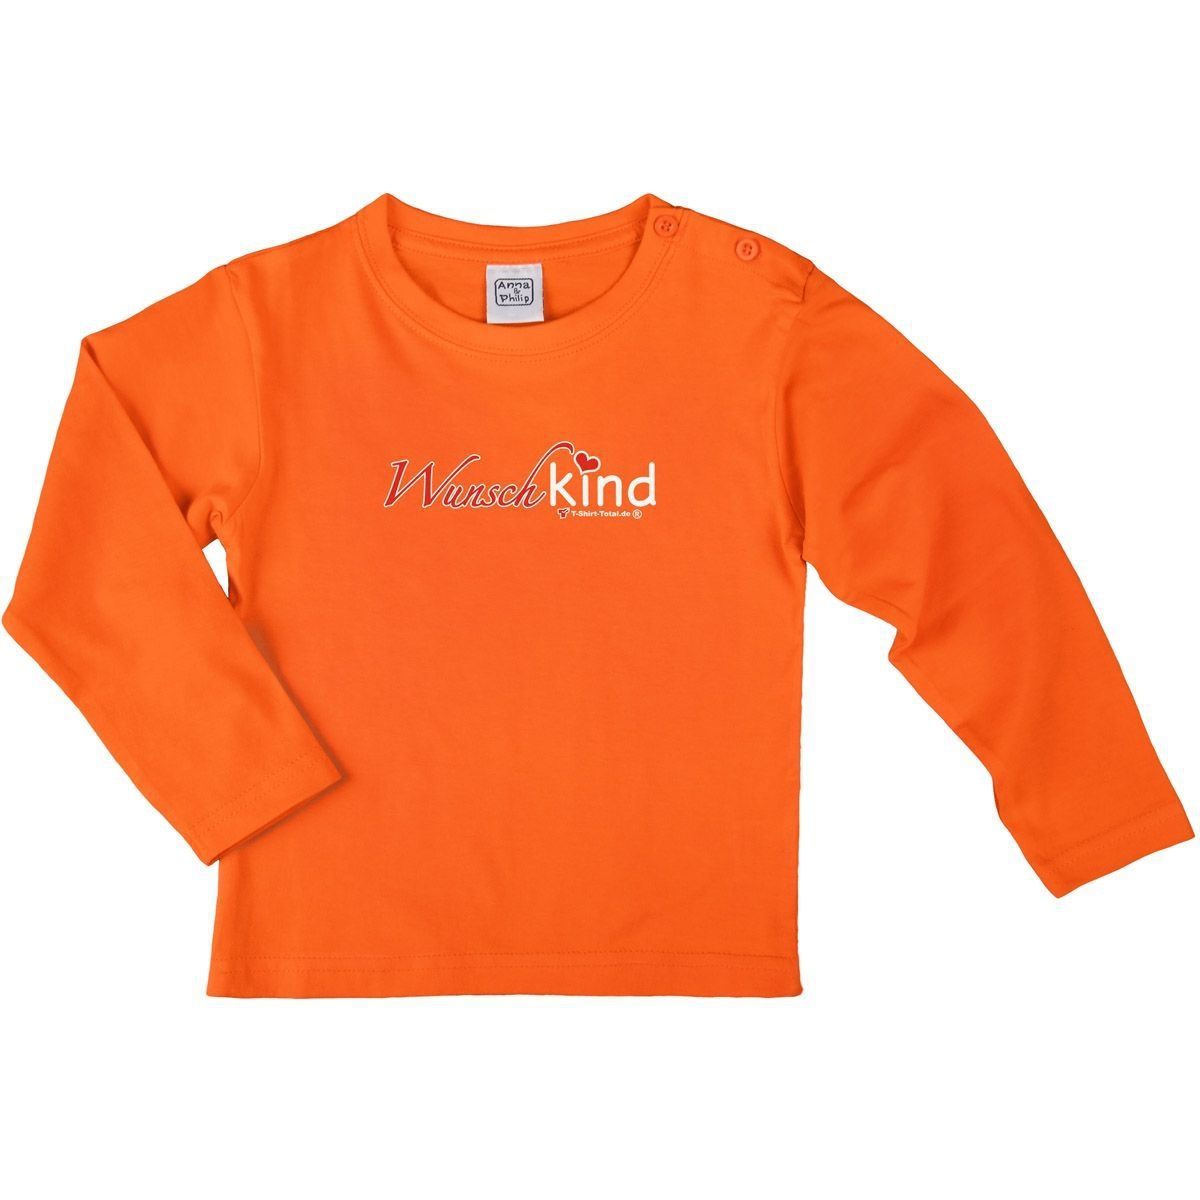 Wunschkind Kinder Langarm Shirt orange 56 / 62